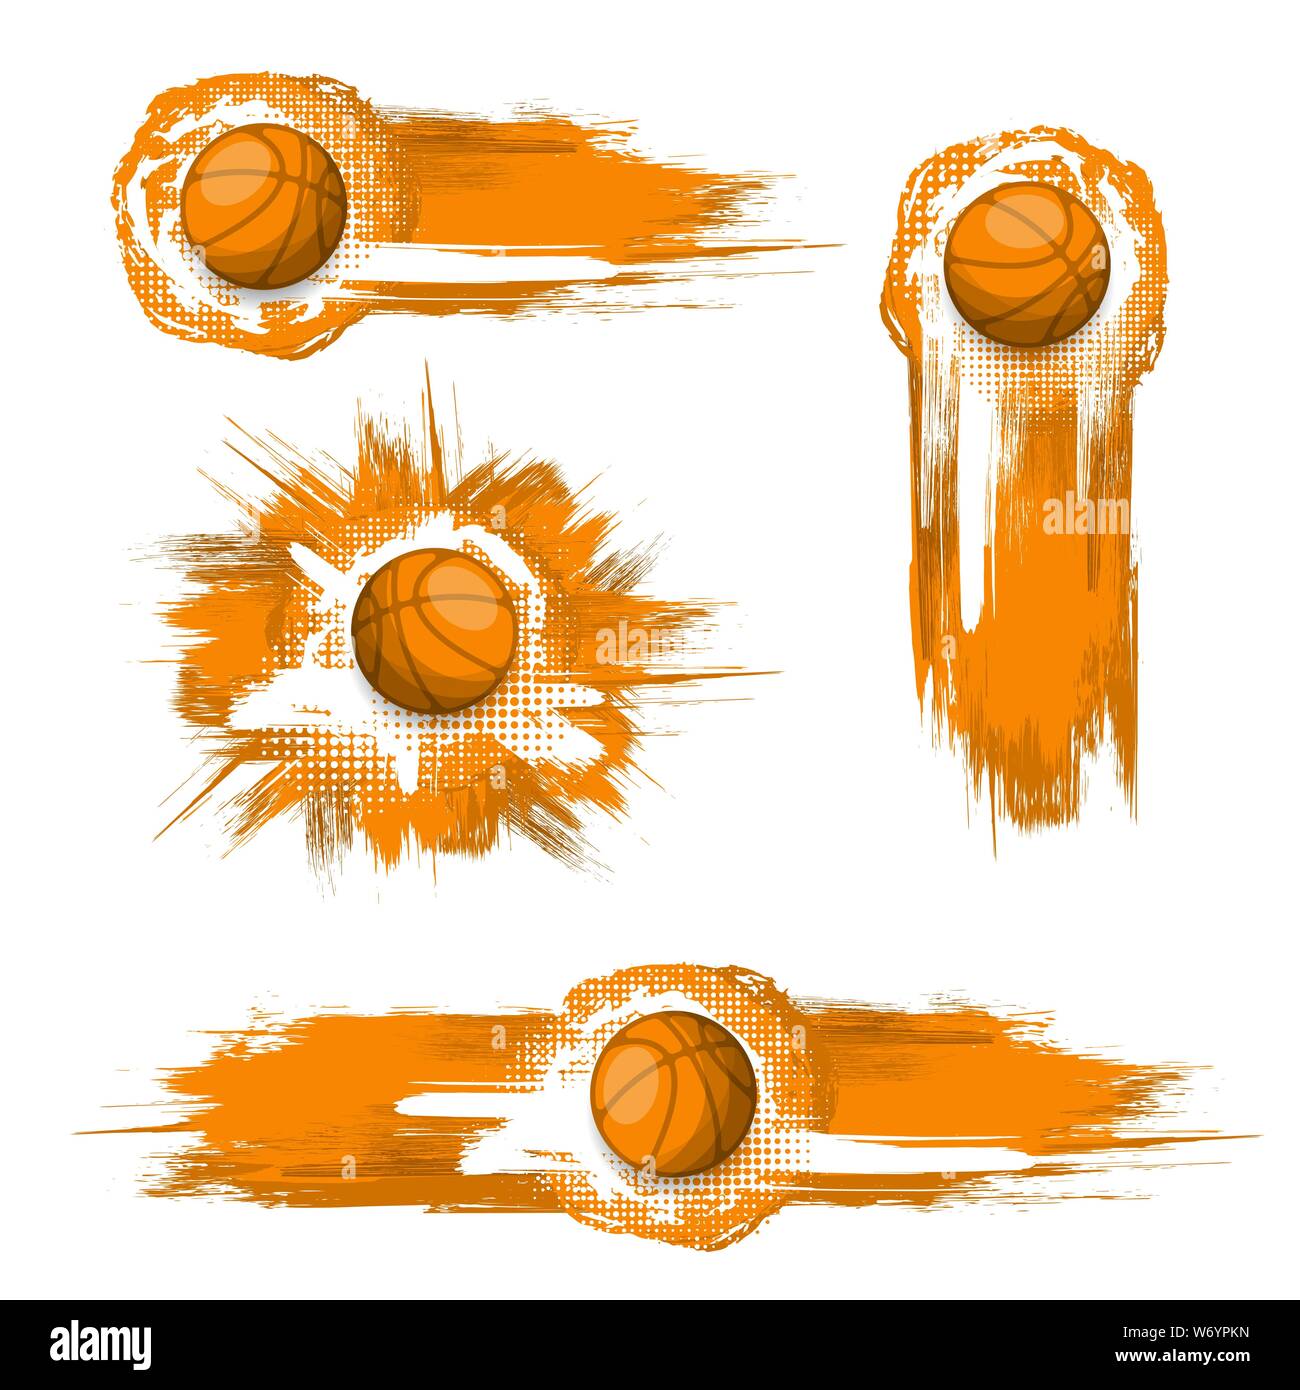 Satz von verschiedenen orange Basketbälle mit grunge Frames auf weißem Hintergrund Stock Vektor